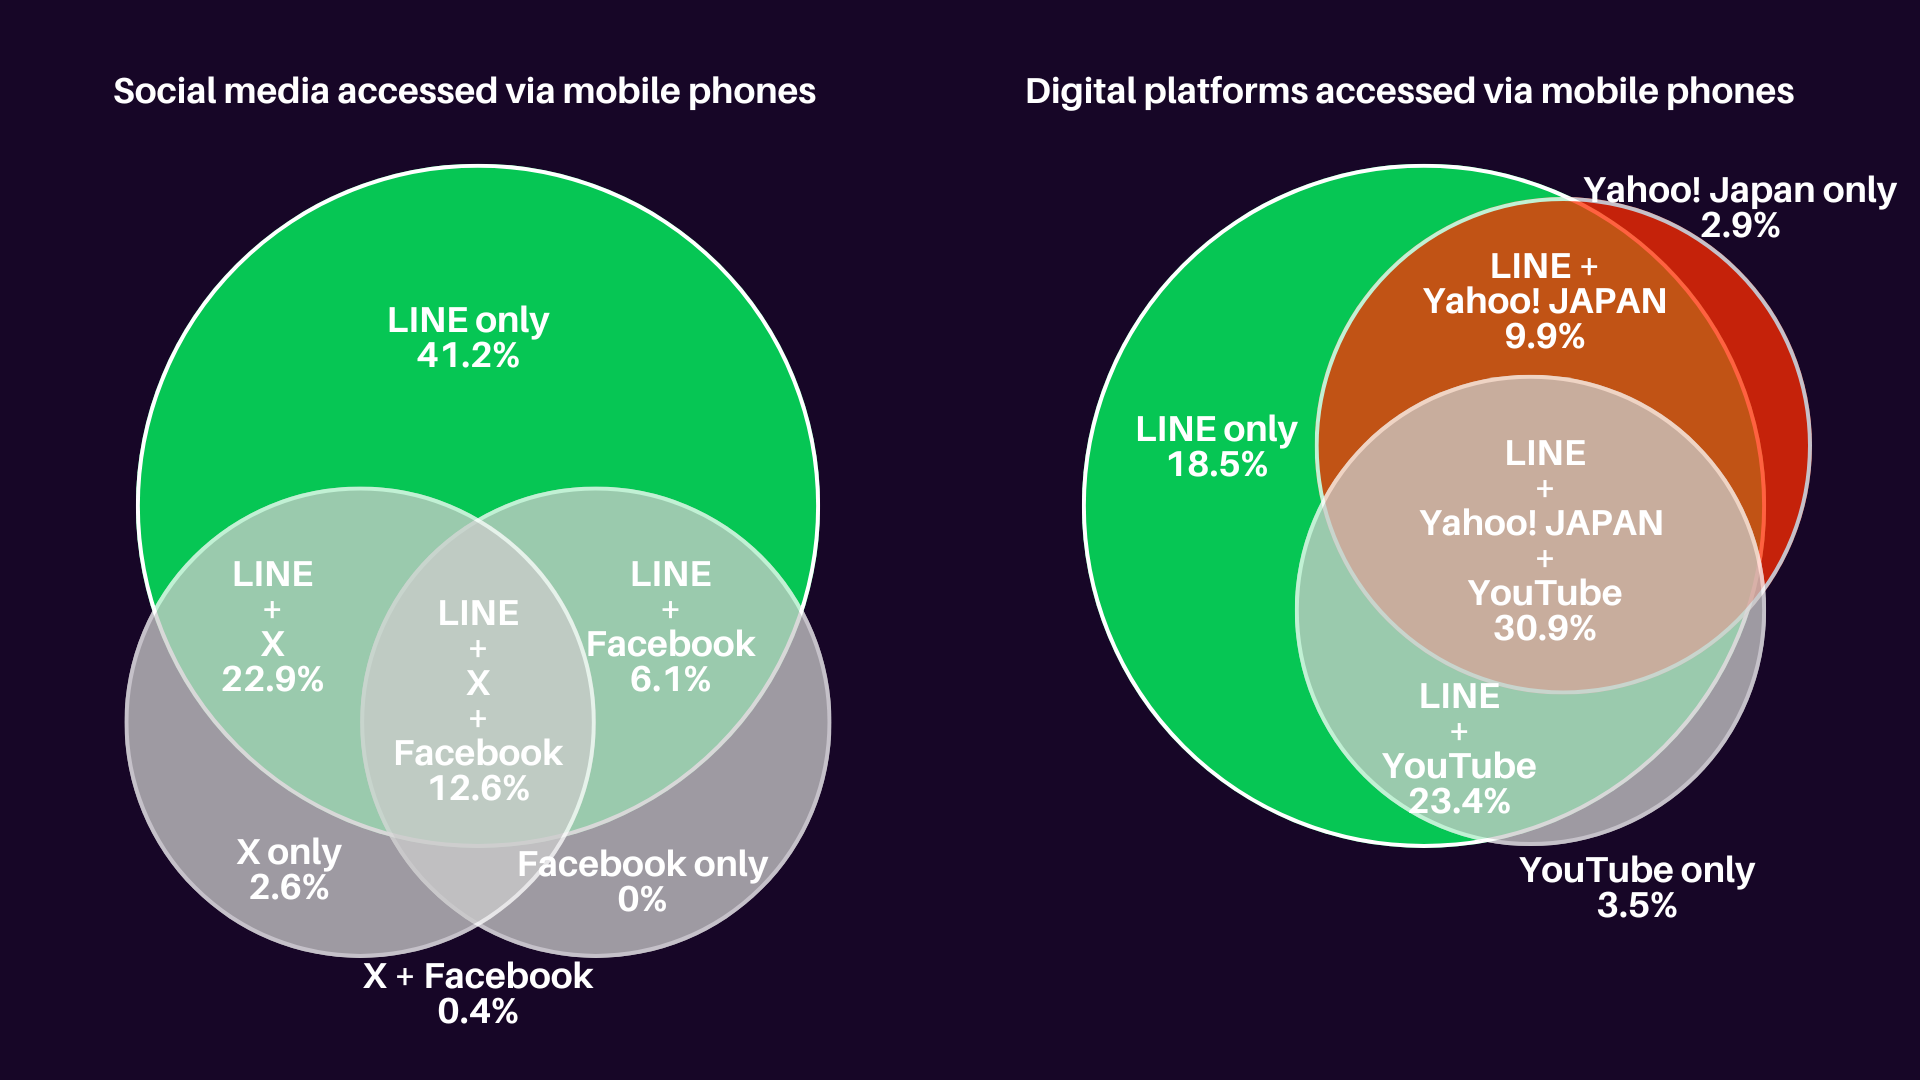 LINE usage vs other platforms